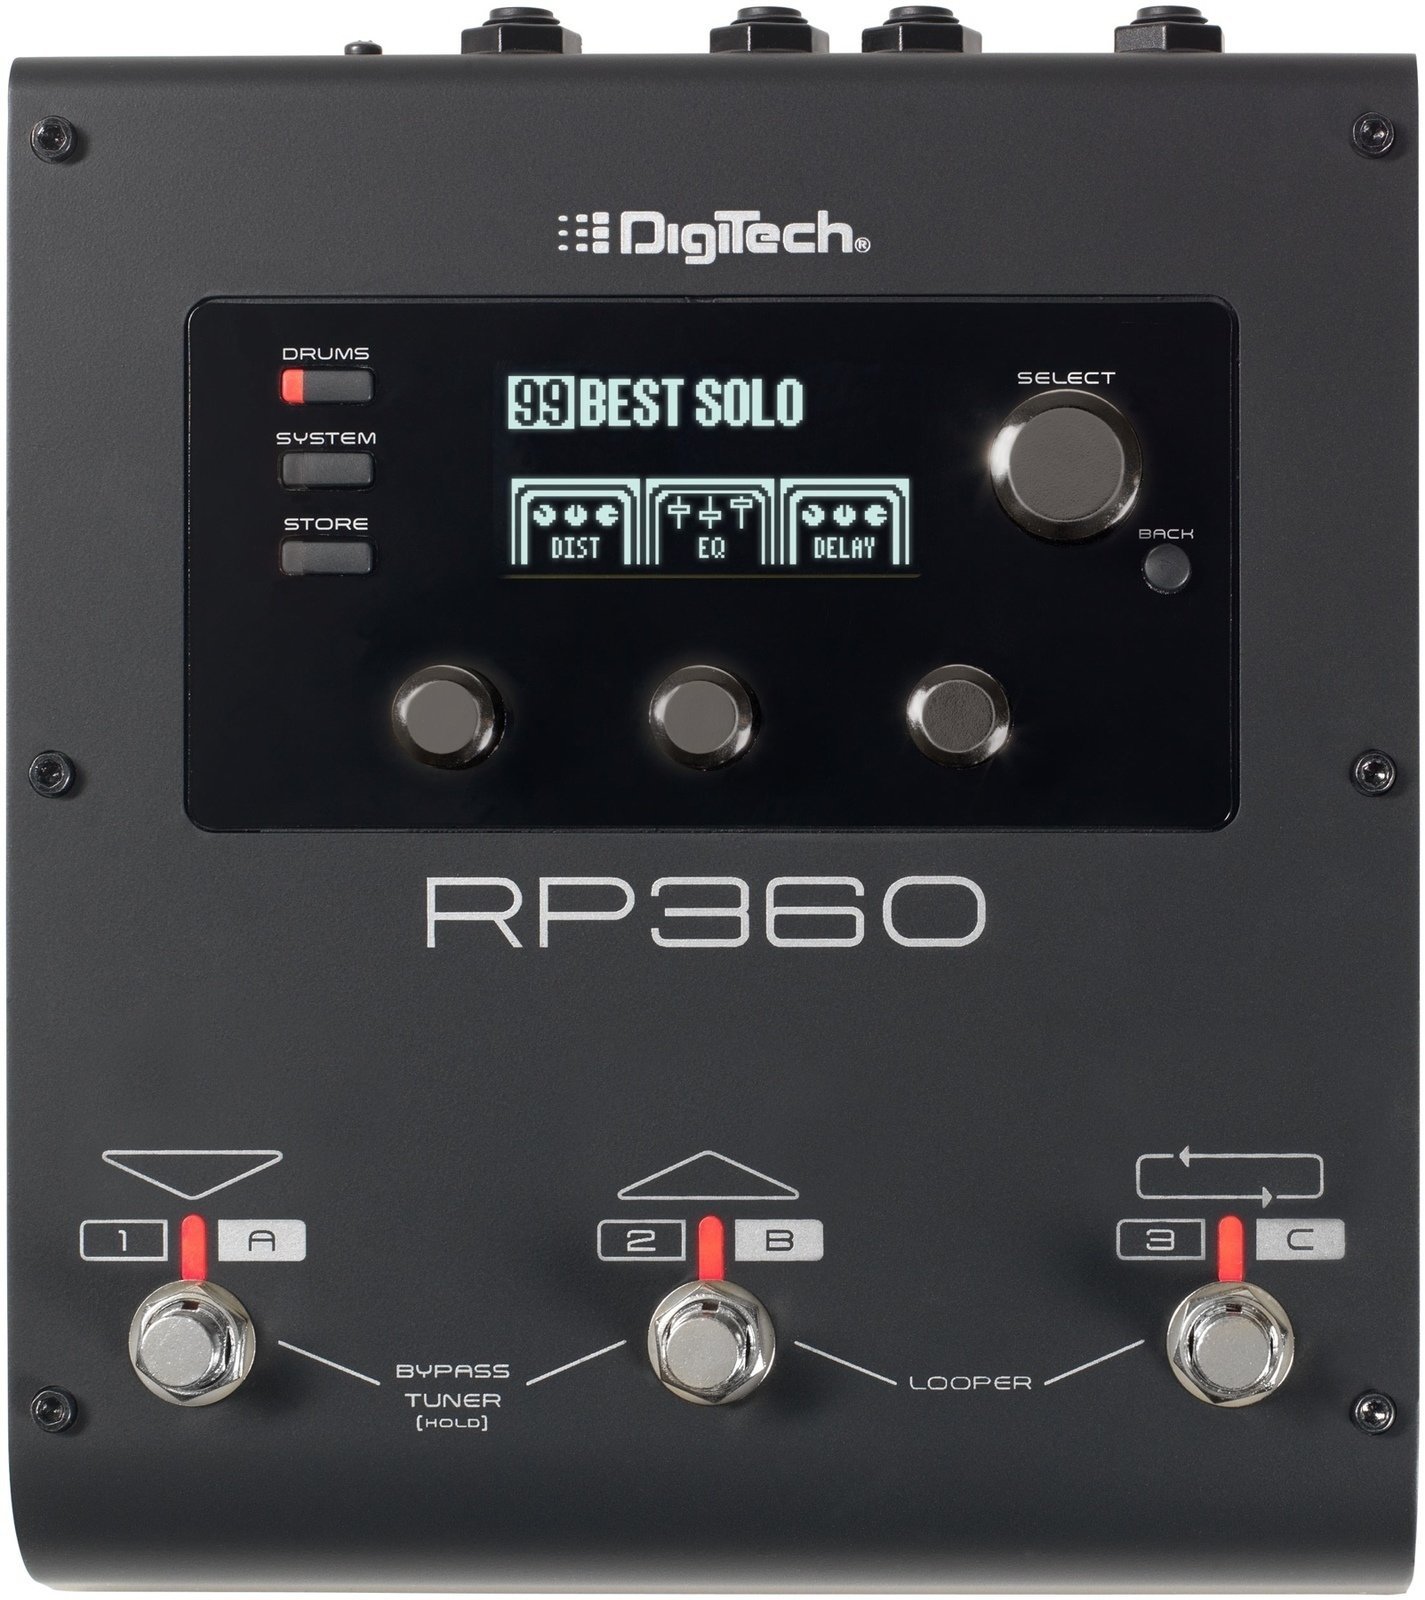 Gitarren-Multieffekt Digitech RP360